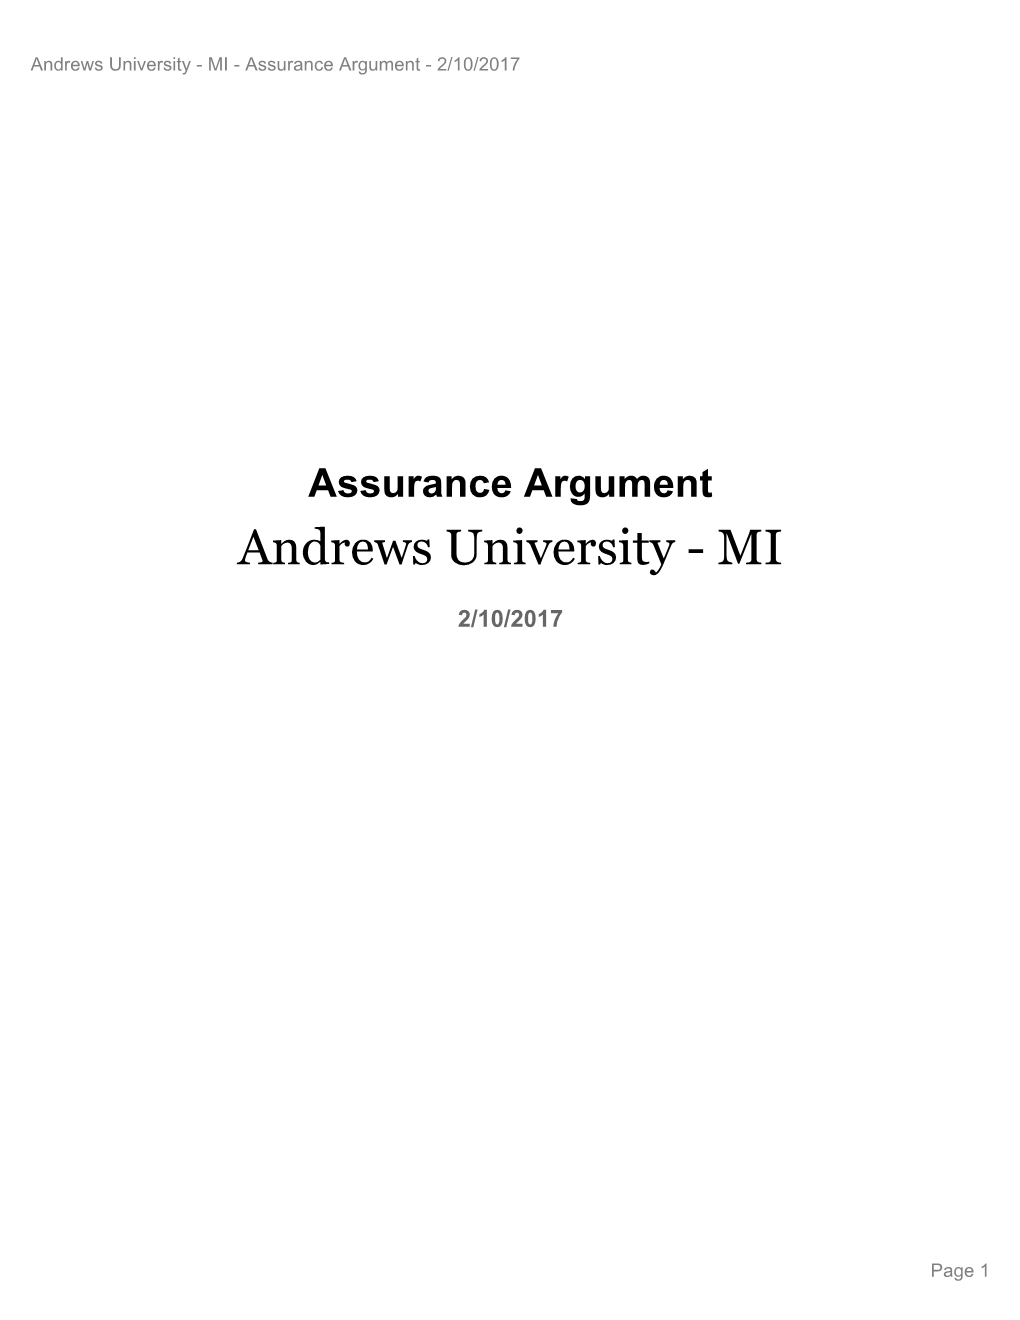 Assurance Argument - 2/10/2017